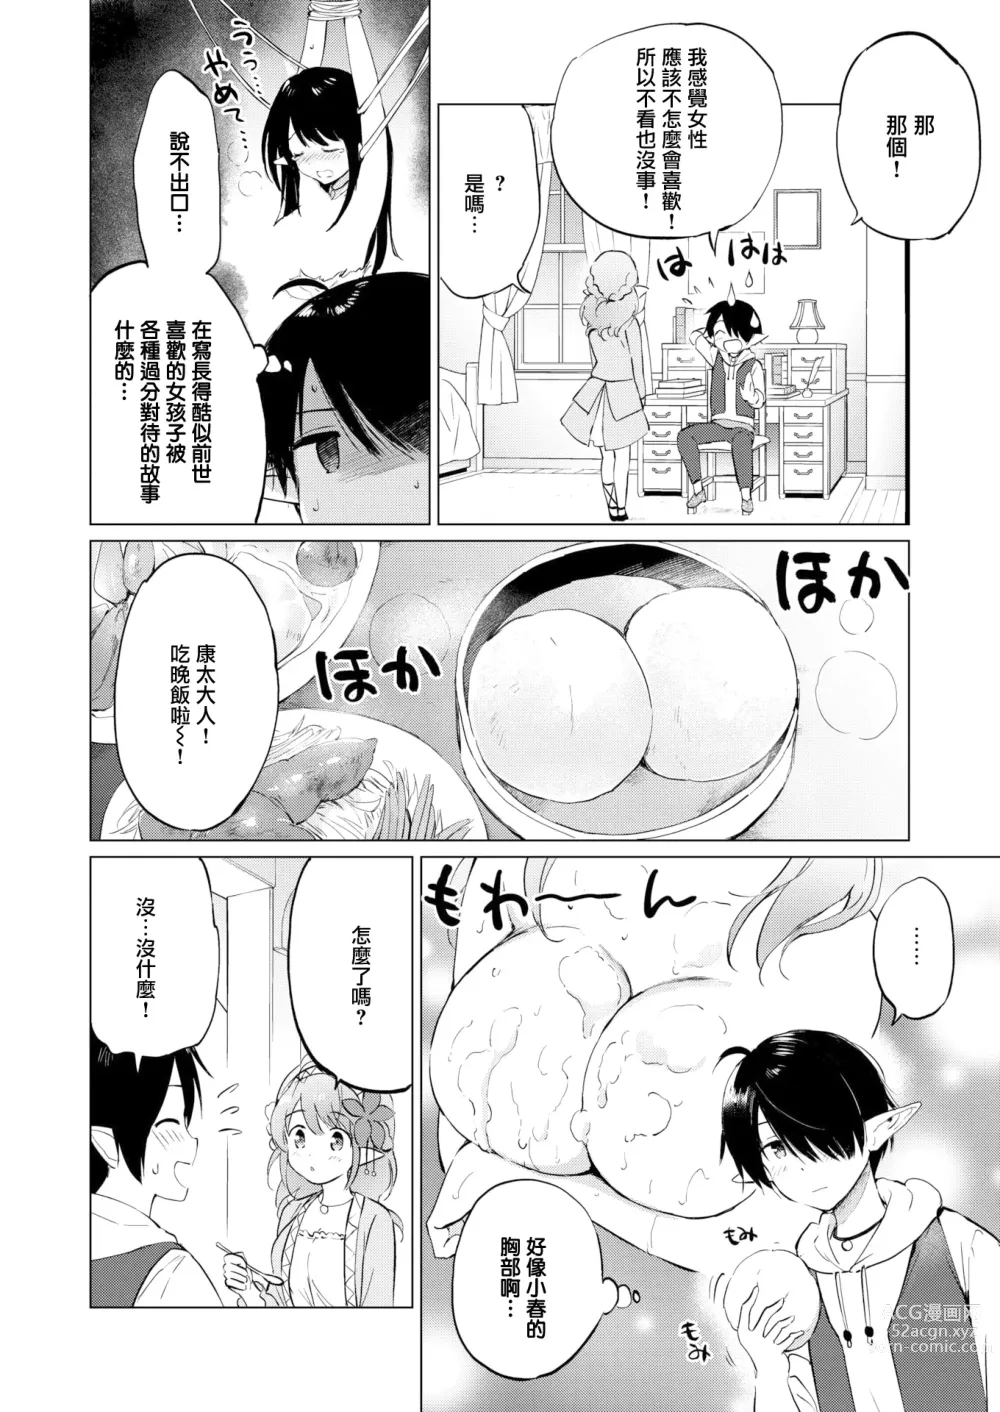 Page 26 of manga Mitsugetsu Paradise - Honeymoon Paradise (decensored)